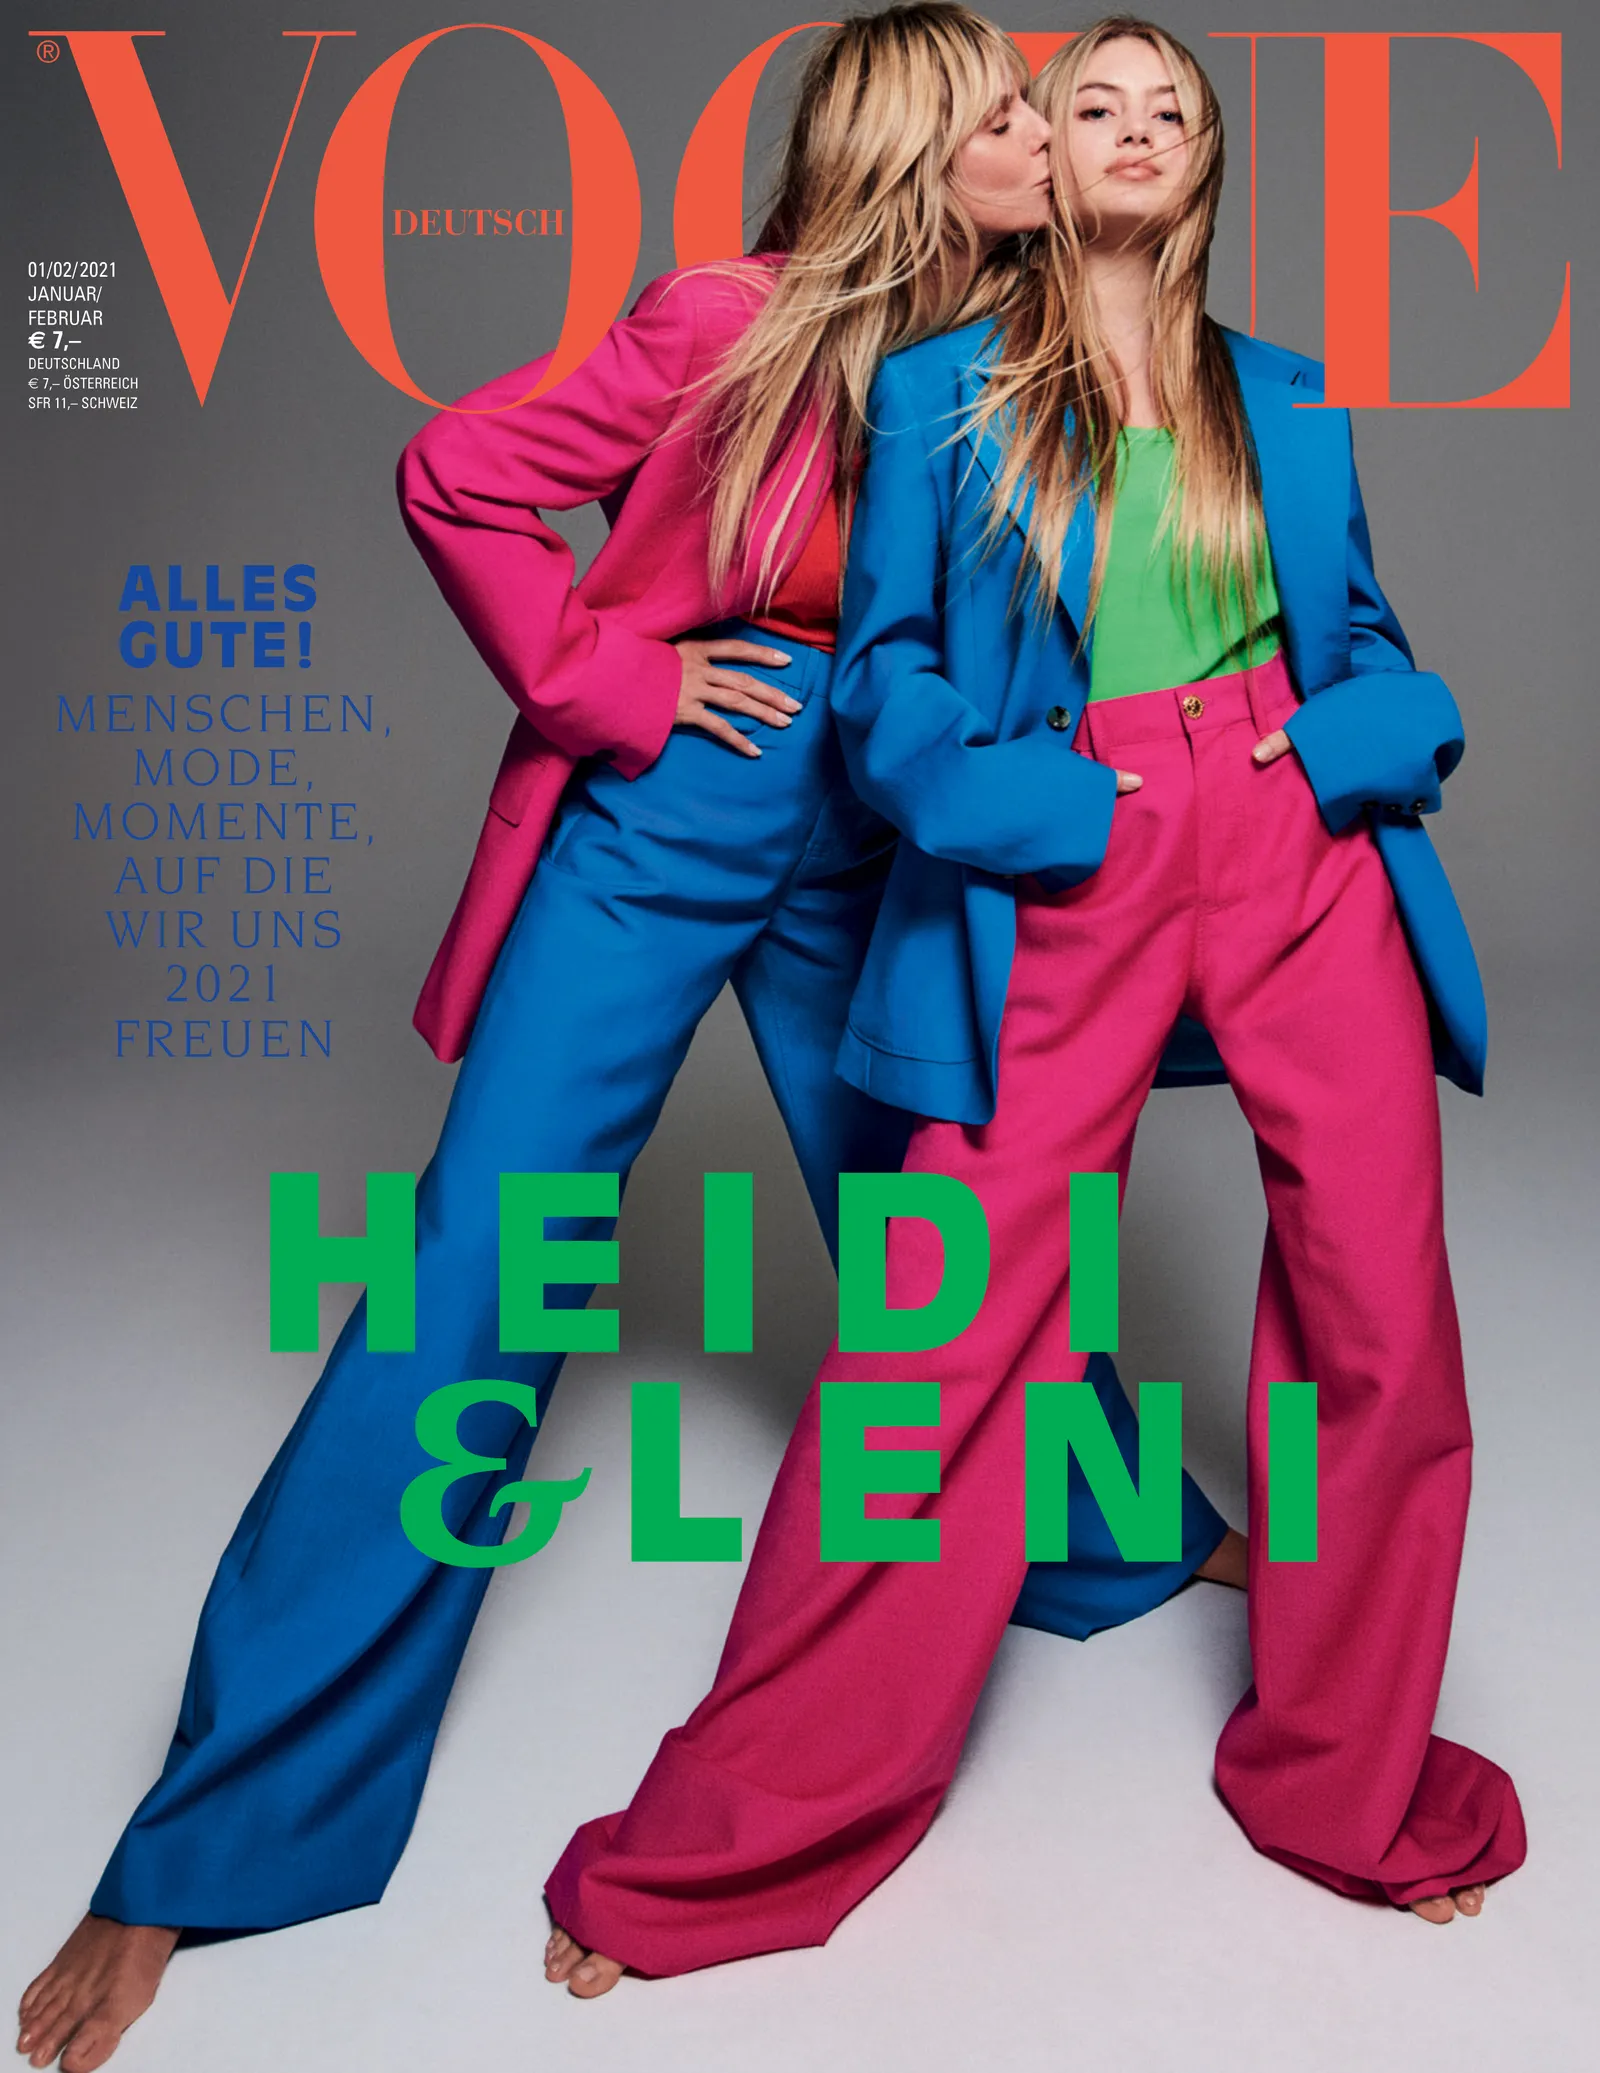 Leni Klum: Nàng mẫu tiếp nối sự nghiệp của mẹ Heidi Klum